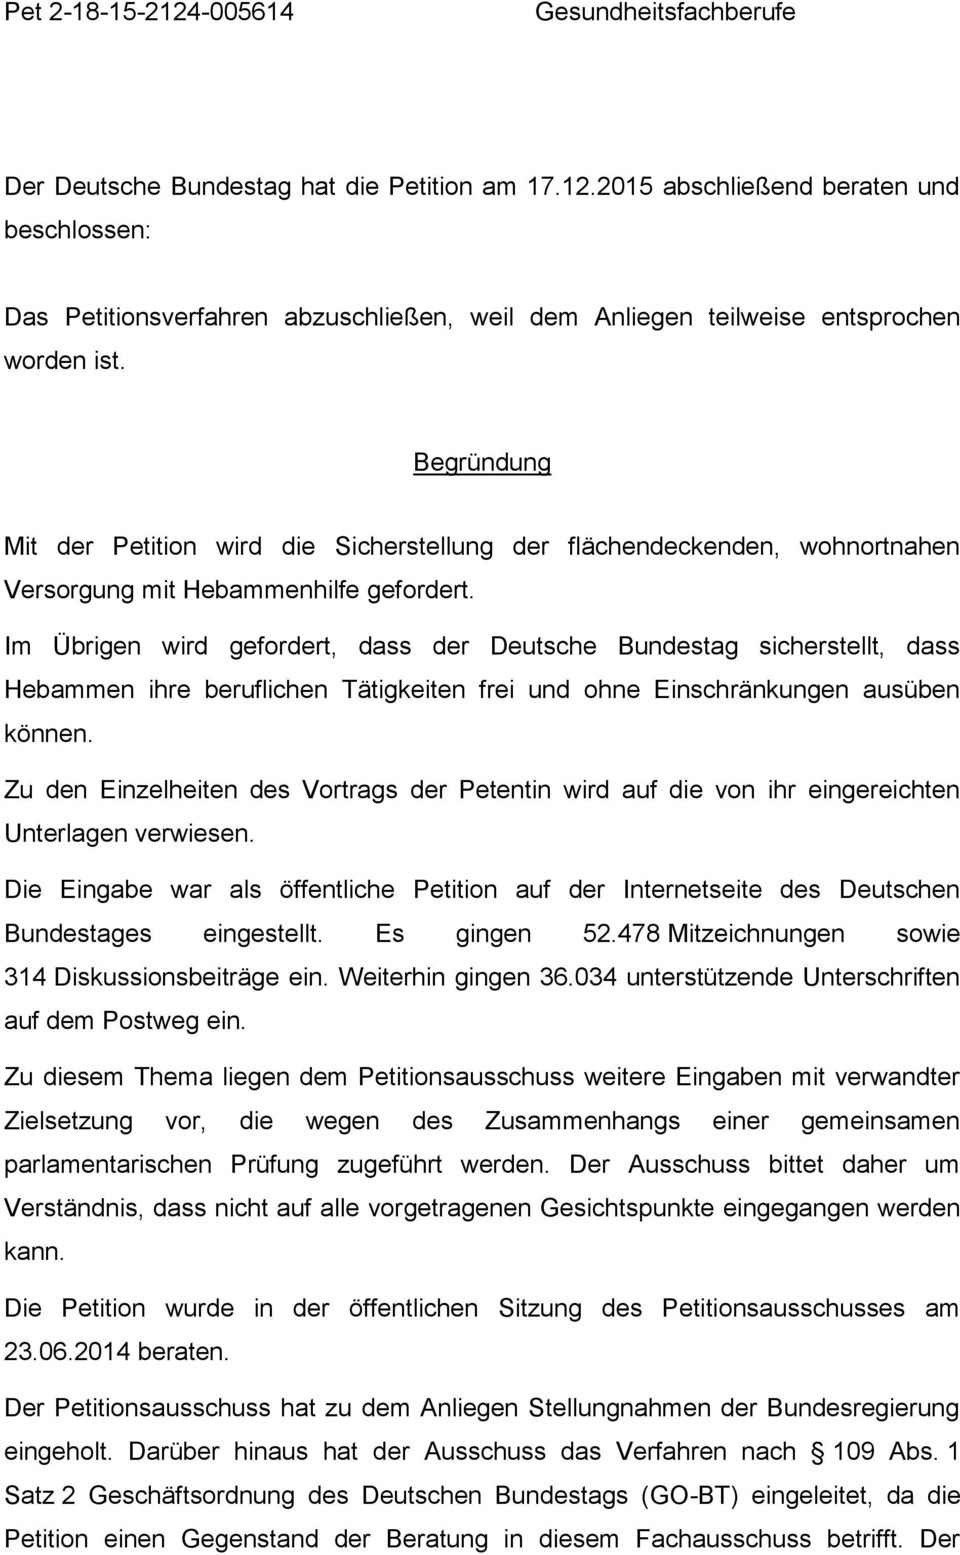 Im Übrigen wird gefordert, dass der Deutsche Bundestag sicherstellt, dass Hebammen ihre beruflichen Tätigkeiten frei und ohne Einschränkungen ausüben können.